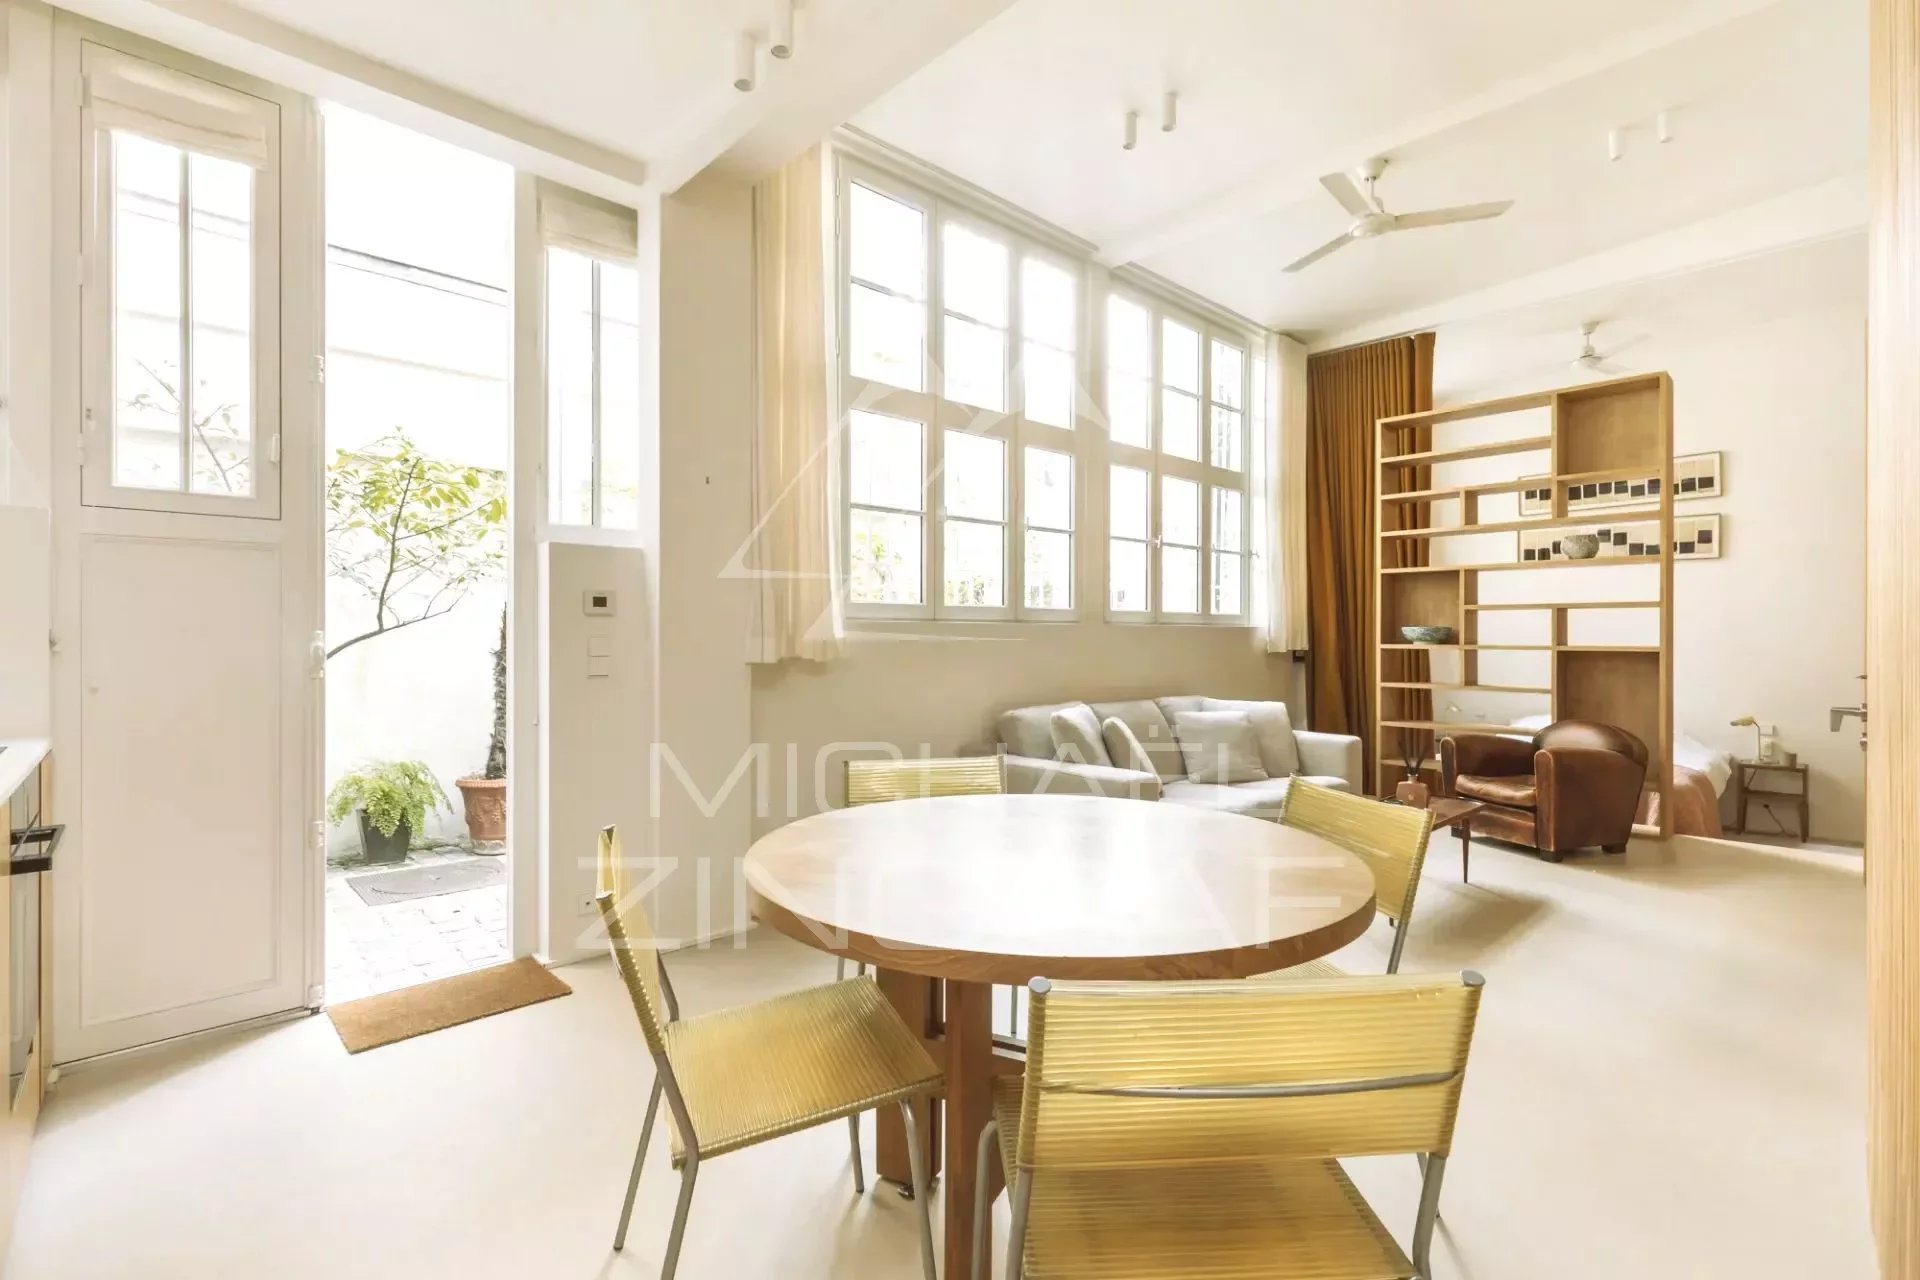 Exclusivité - A vendre - Appartement esprit maison - Atelier d'artiste - Rue de Verneuil